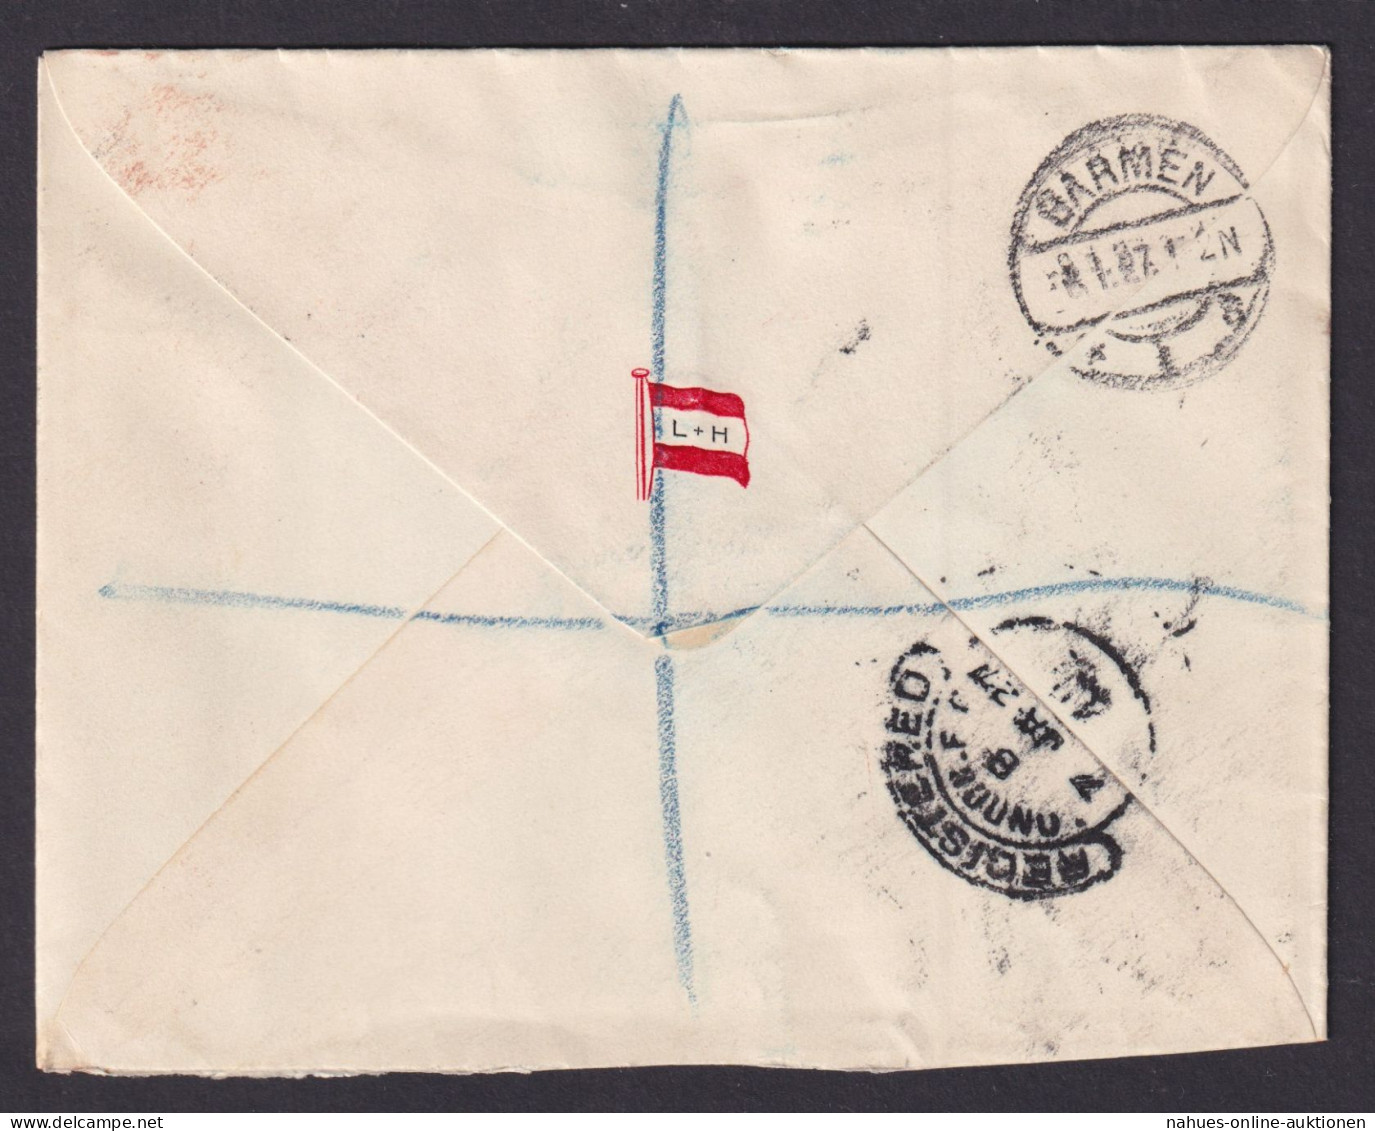 Briefmarken Barbados R Brief MIF R.L.O. Kolonialsiegel Wuppertal Barmen - Barbados (1966-...)